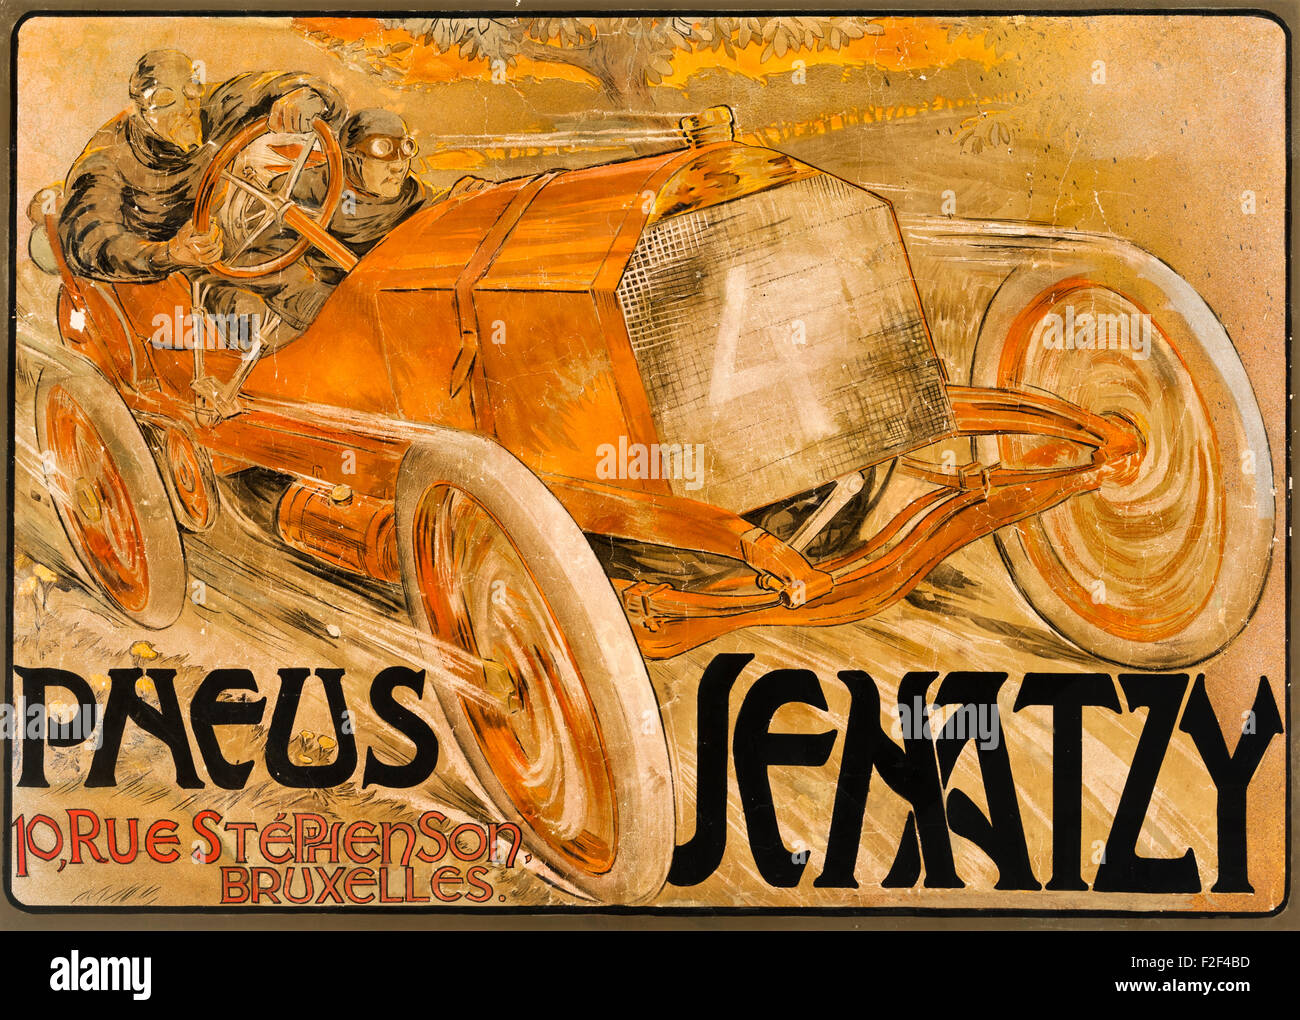 1906 Pneus Senatzy Automobile Racing cartel por Georges Gaudy, publicidad Senatzy neumáticos de automóvil Foto de stock